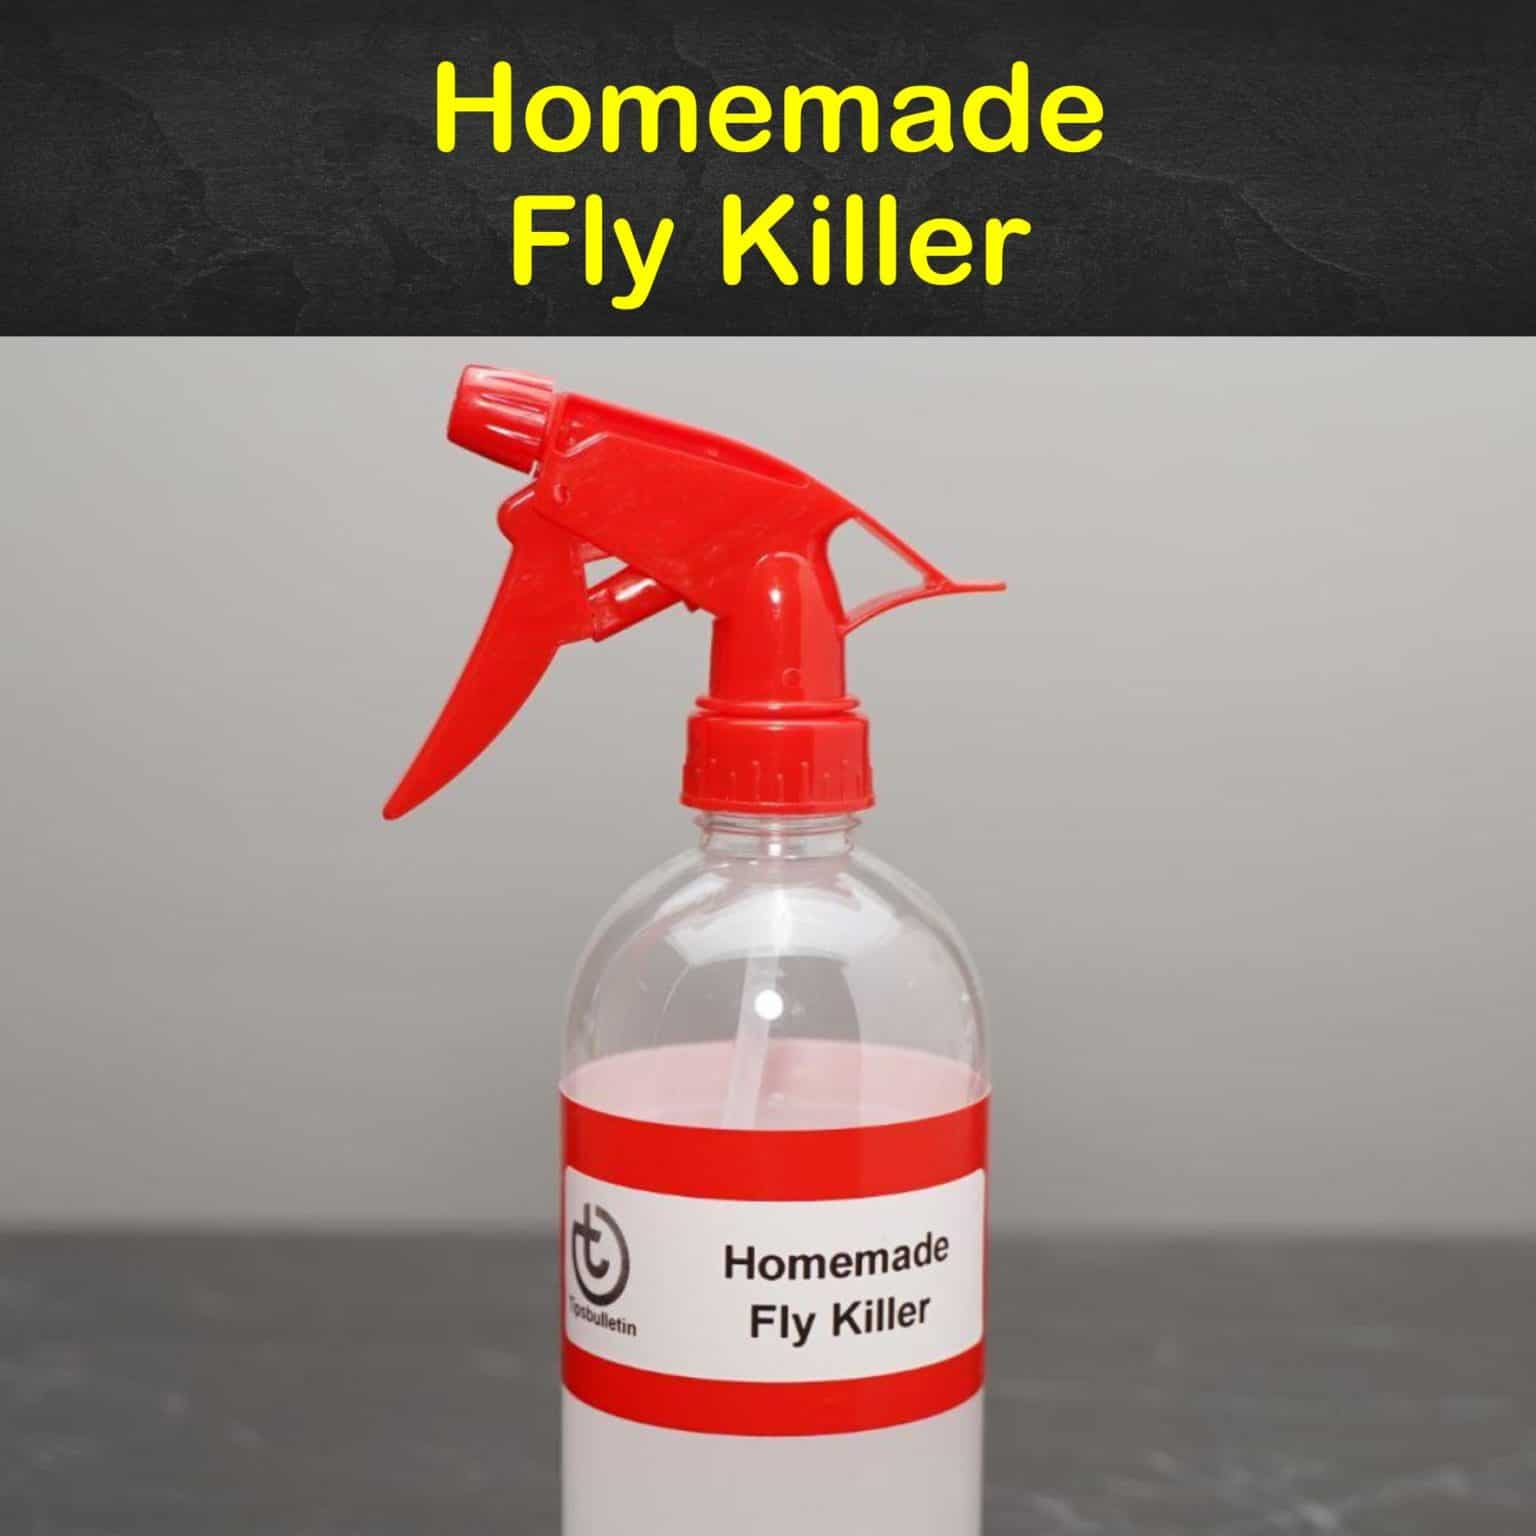 Homemade Fly Killer S99 1536x1536 